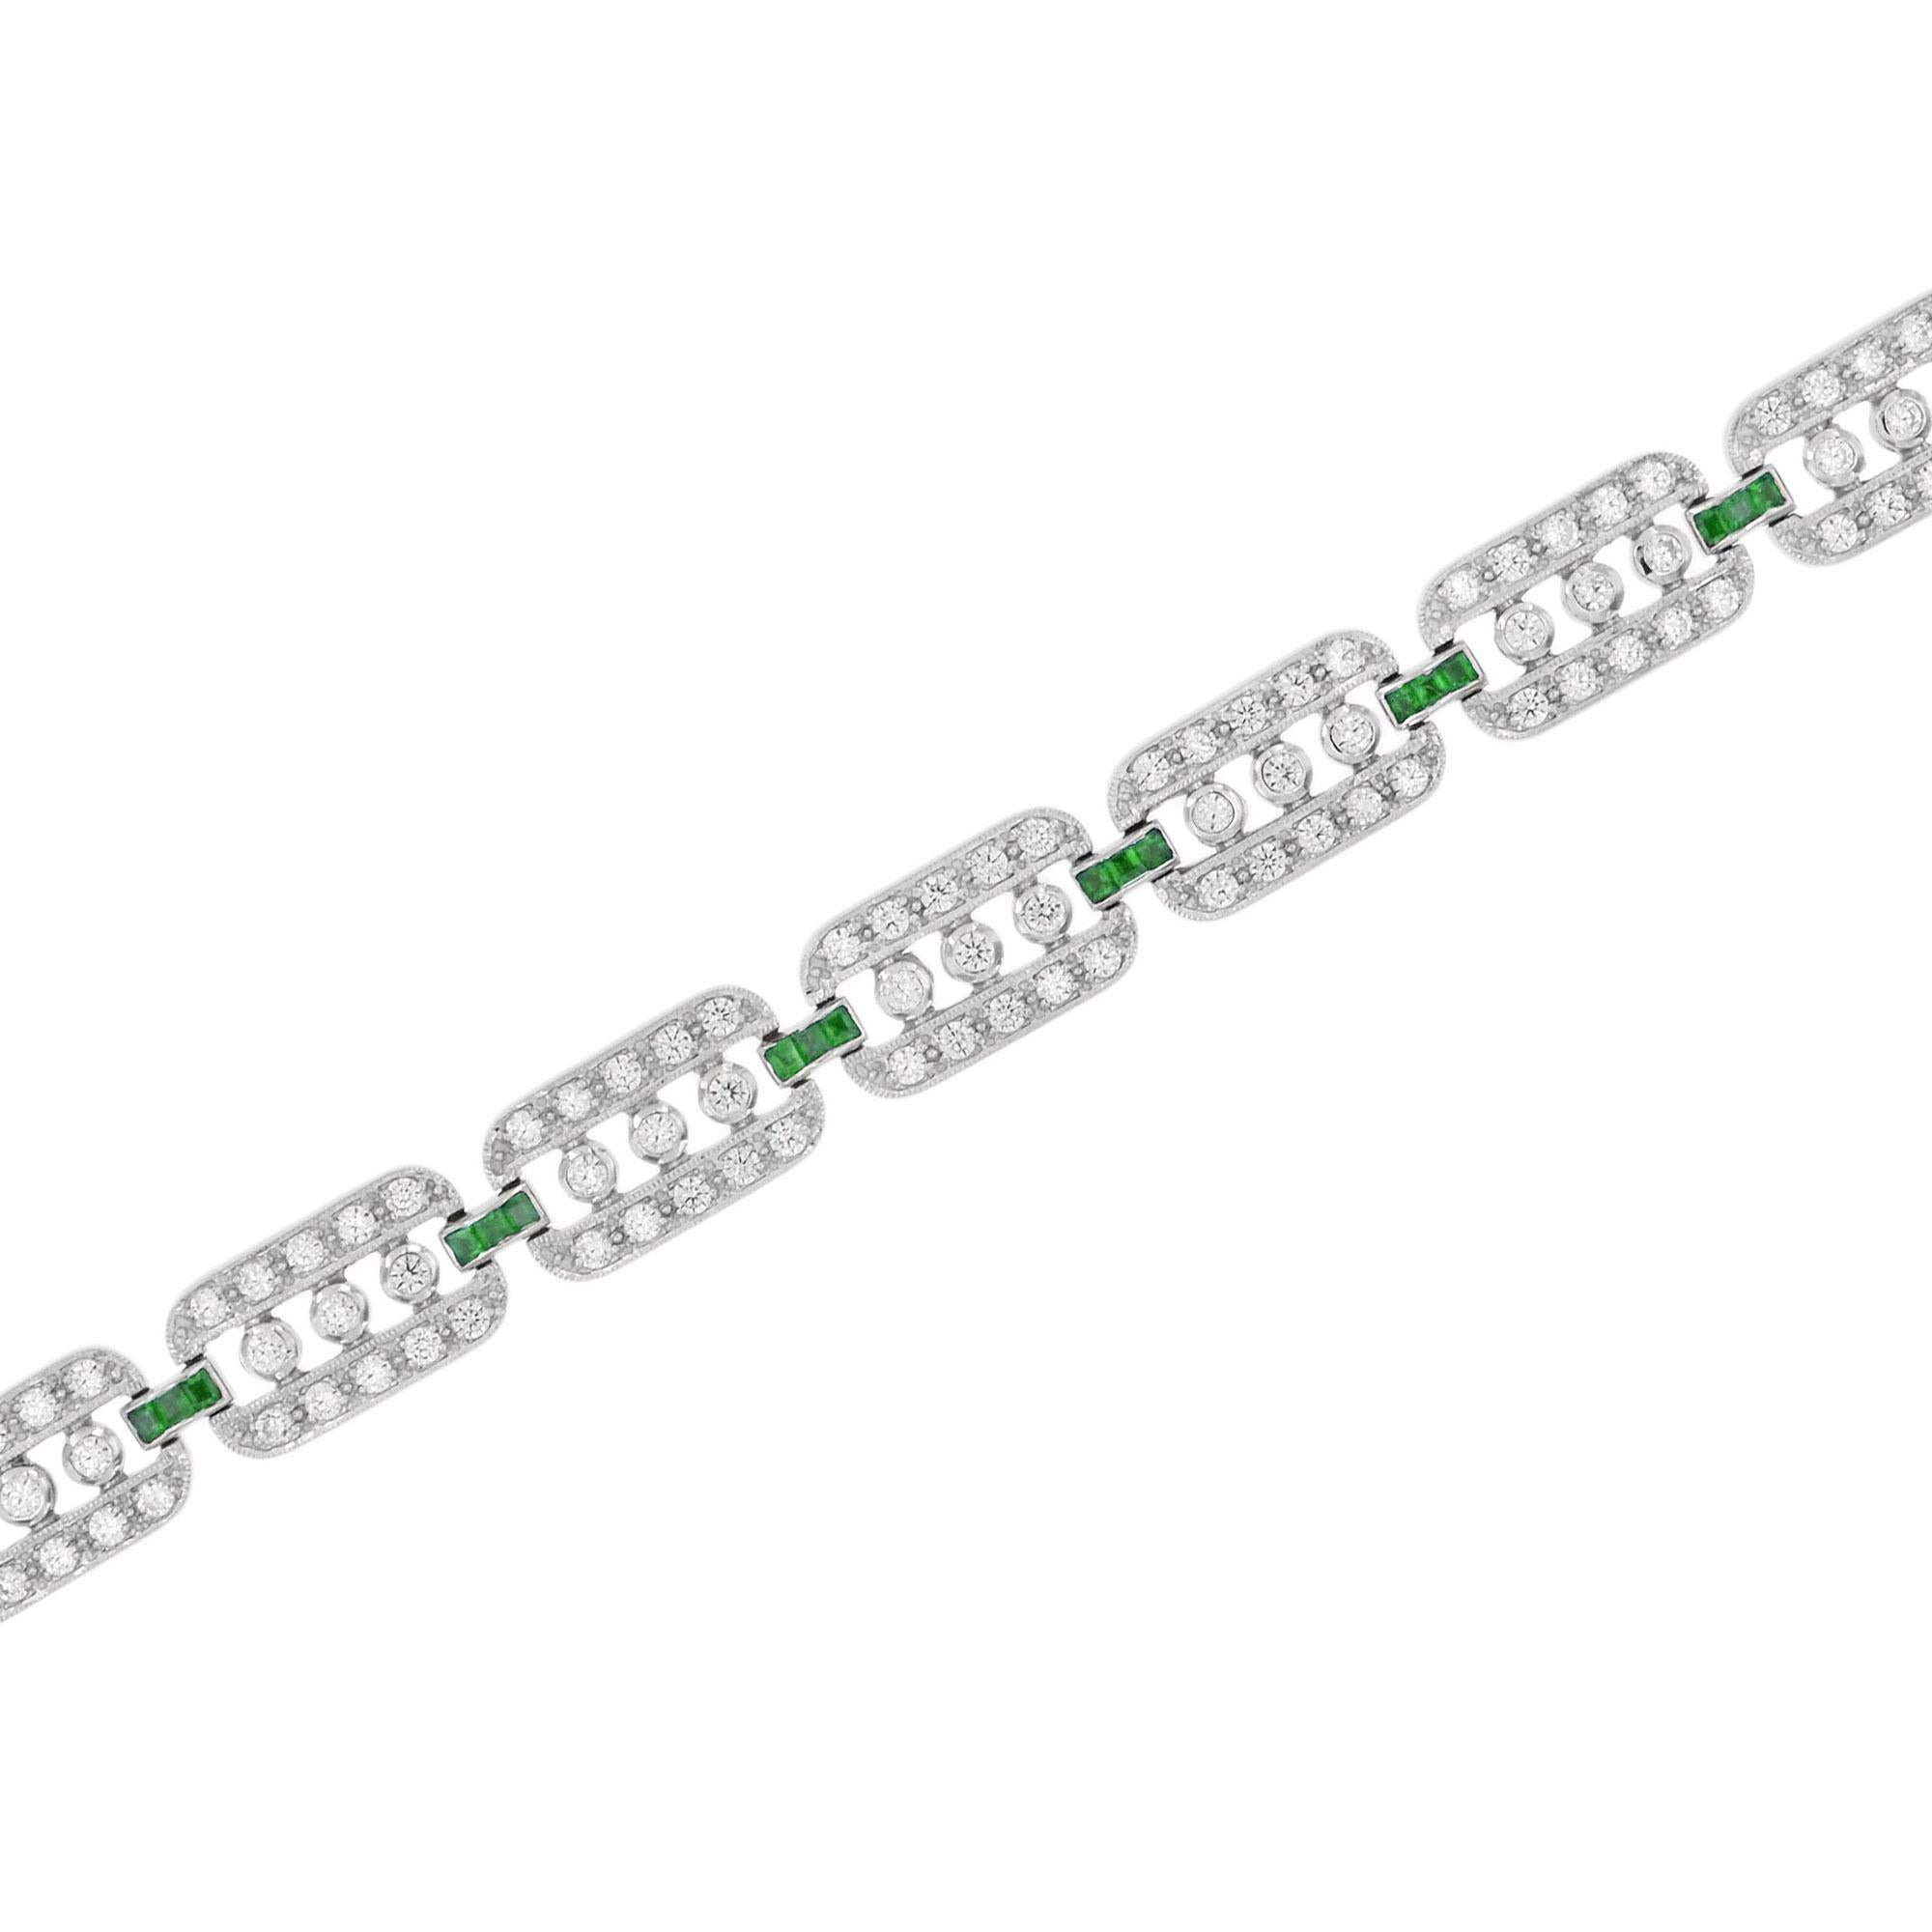 Dieses handgefertigte Armband aus atemberaubenden Diamanten und Smaragden ist perfekt für den Abend oder den Tag. Jeder einzelne Abschnitt ist mit runden Diamanten besetzt und wird durch eine Linie aus Smaragden im französischen Schliff von seinem